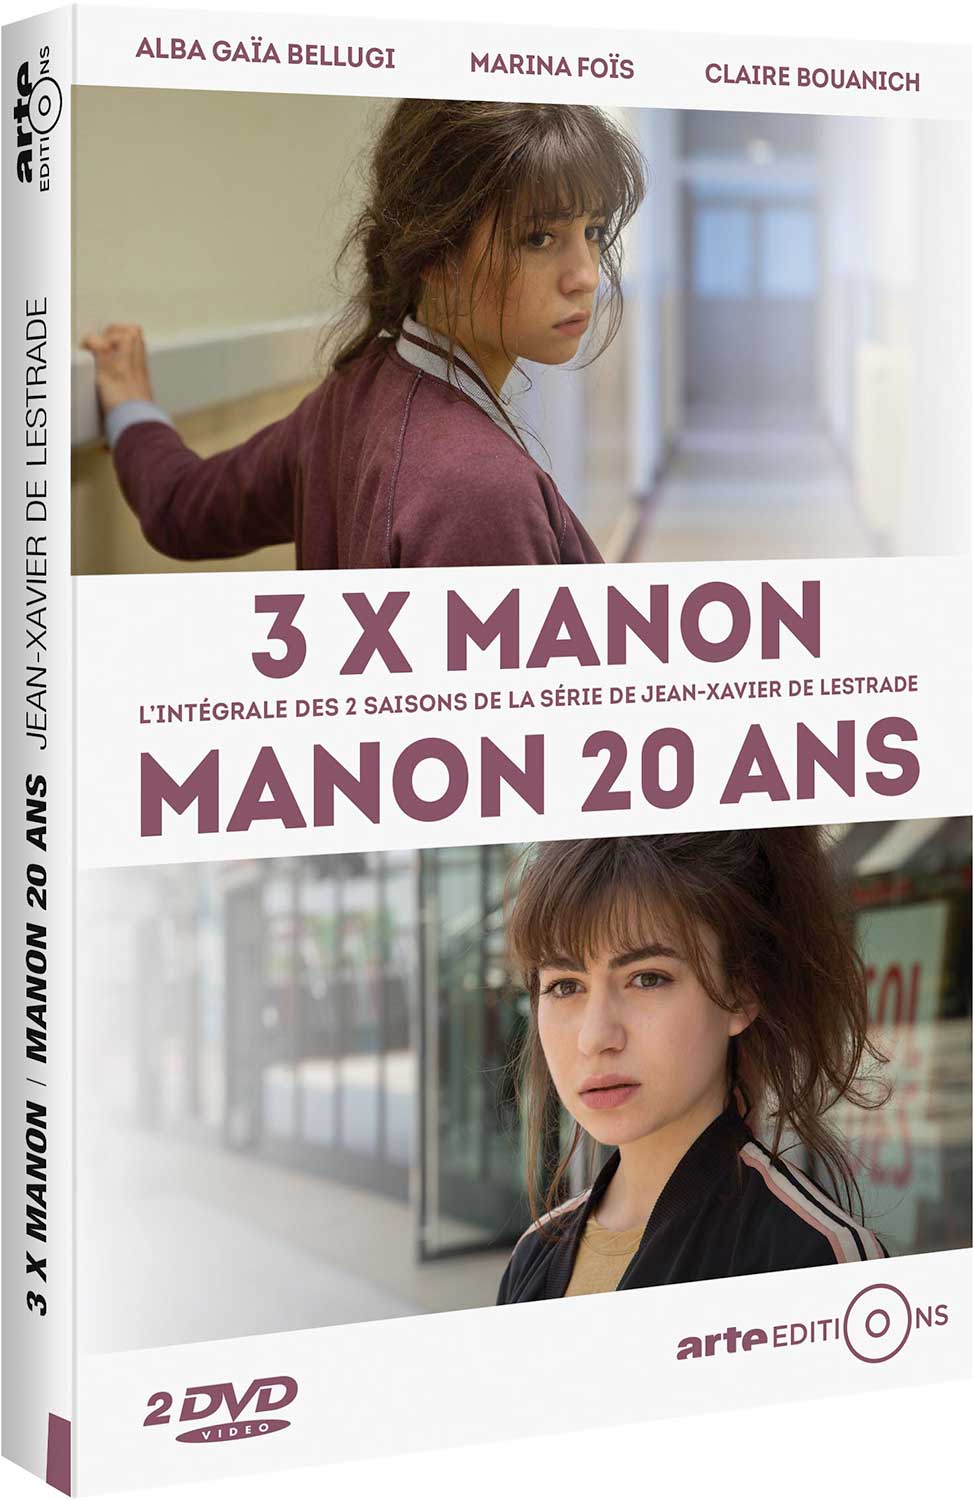 3 x Manon + Manon 20 ans